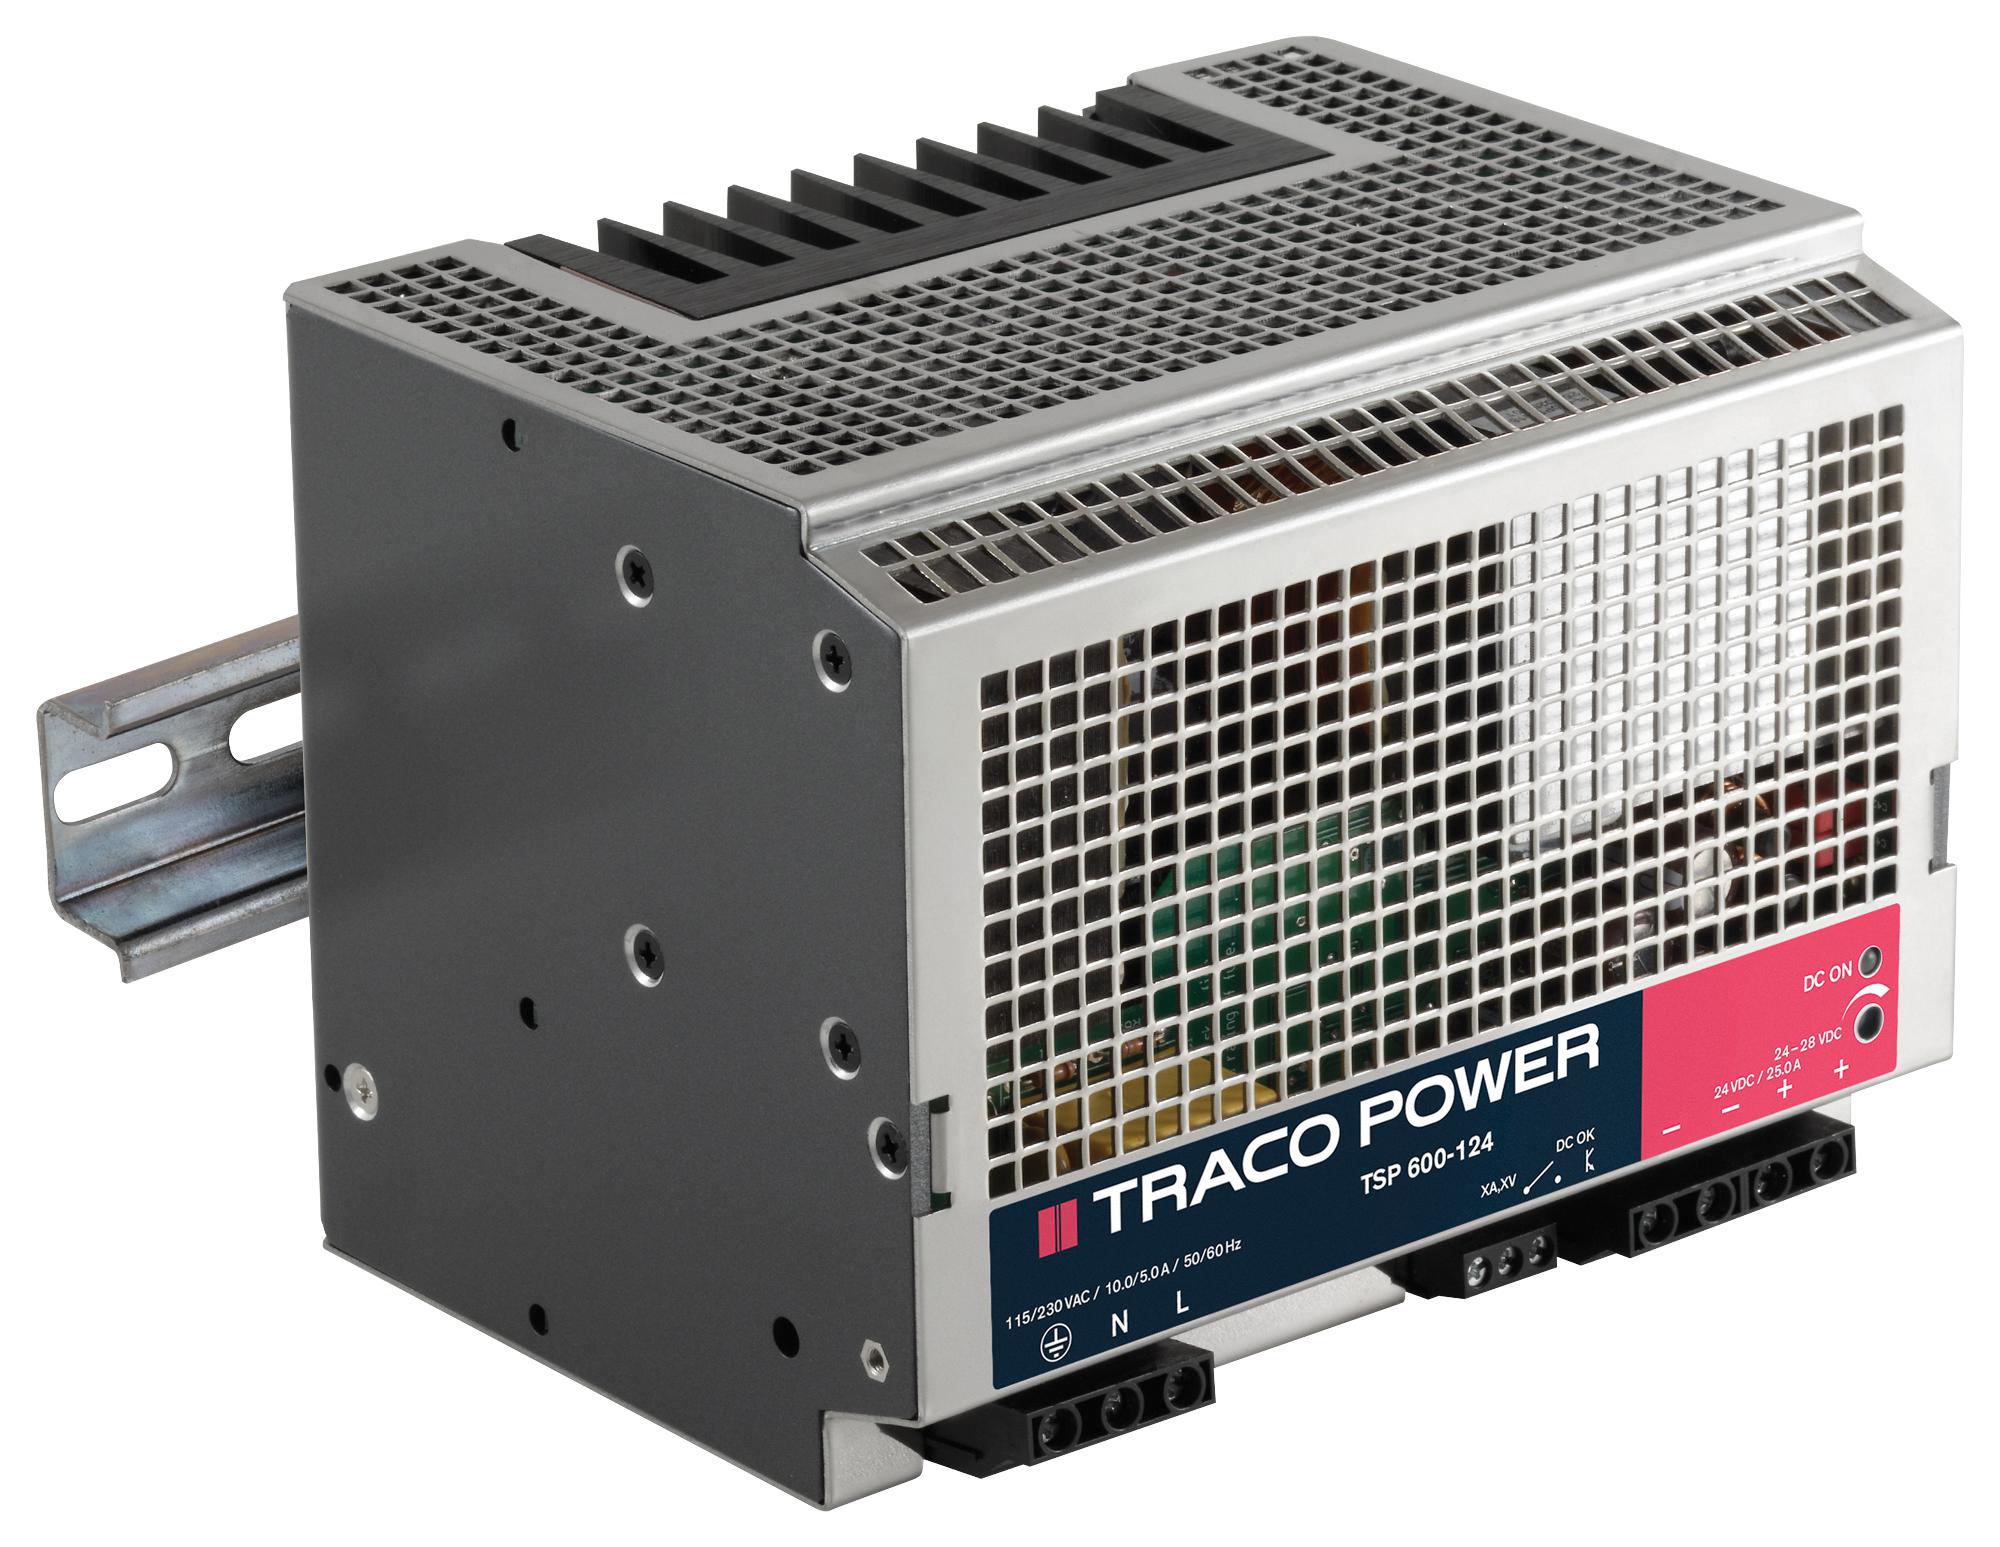 TSP 600-124 PSU, RAIL, 600W, 24V/25A TRACO POWER